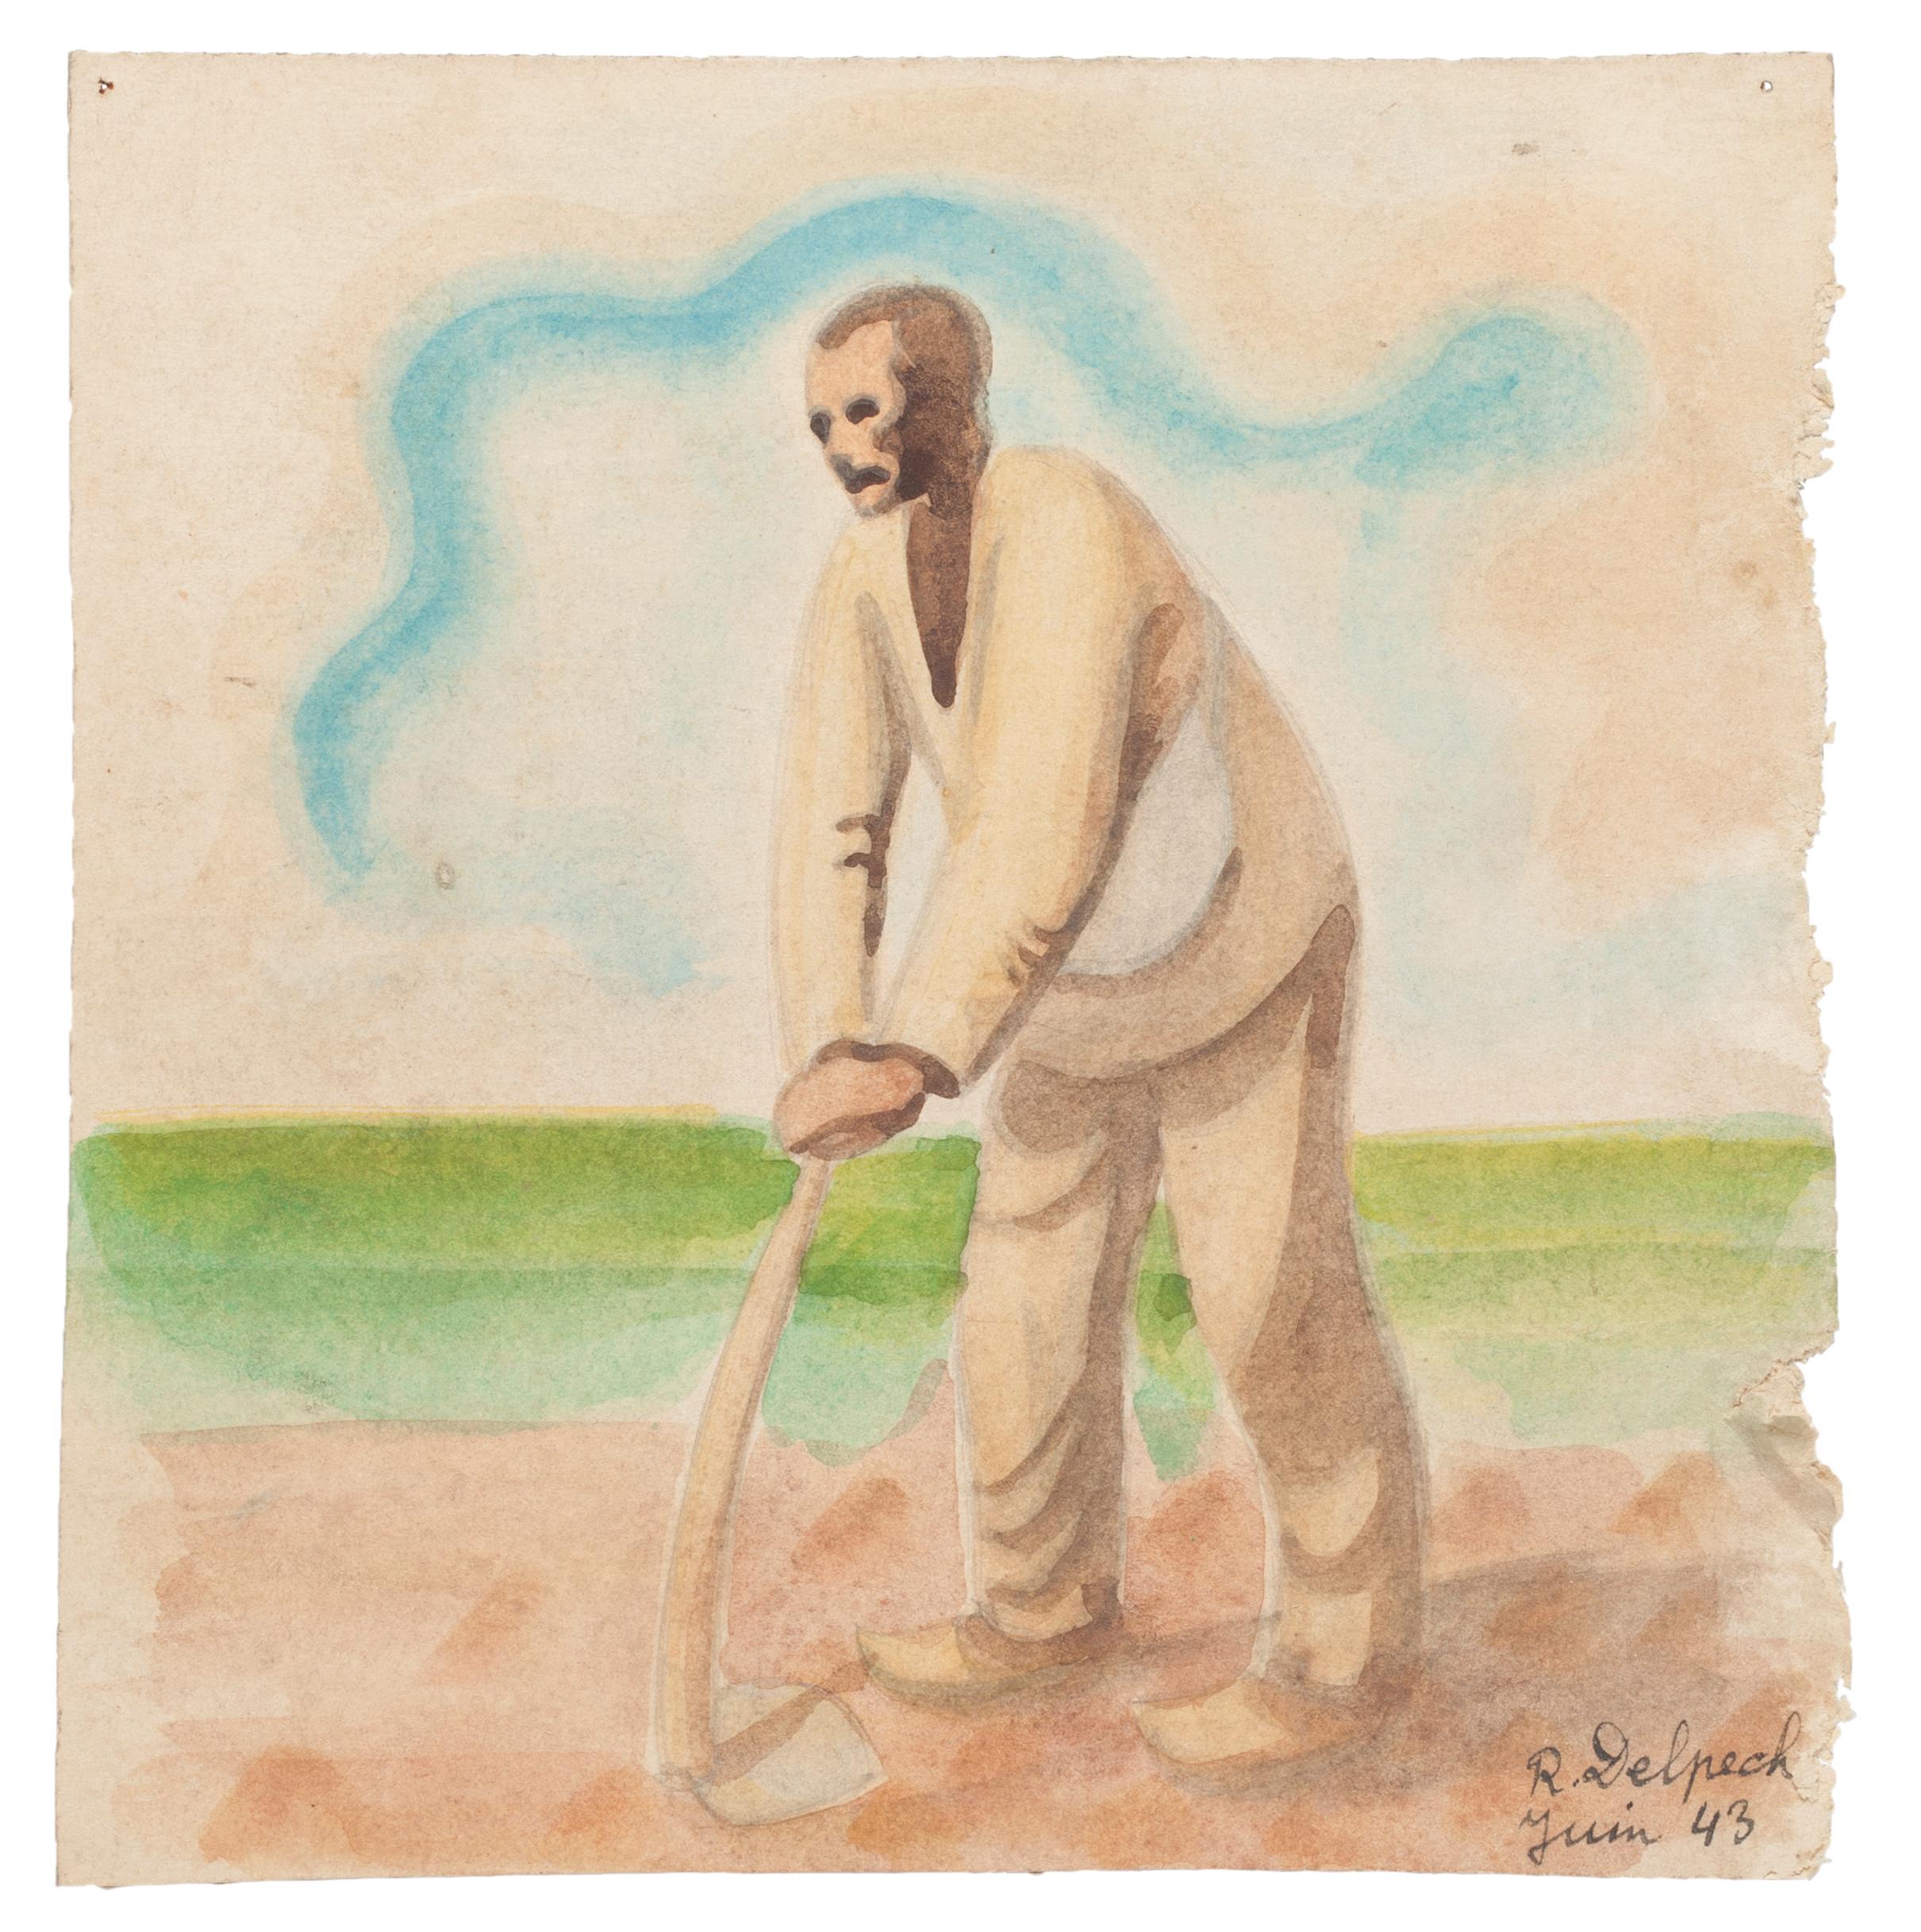 Jean Delpech Figurative Art - Farmer - Original Watercolor on Paper by J. Delpech after Millet - 1943